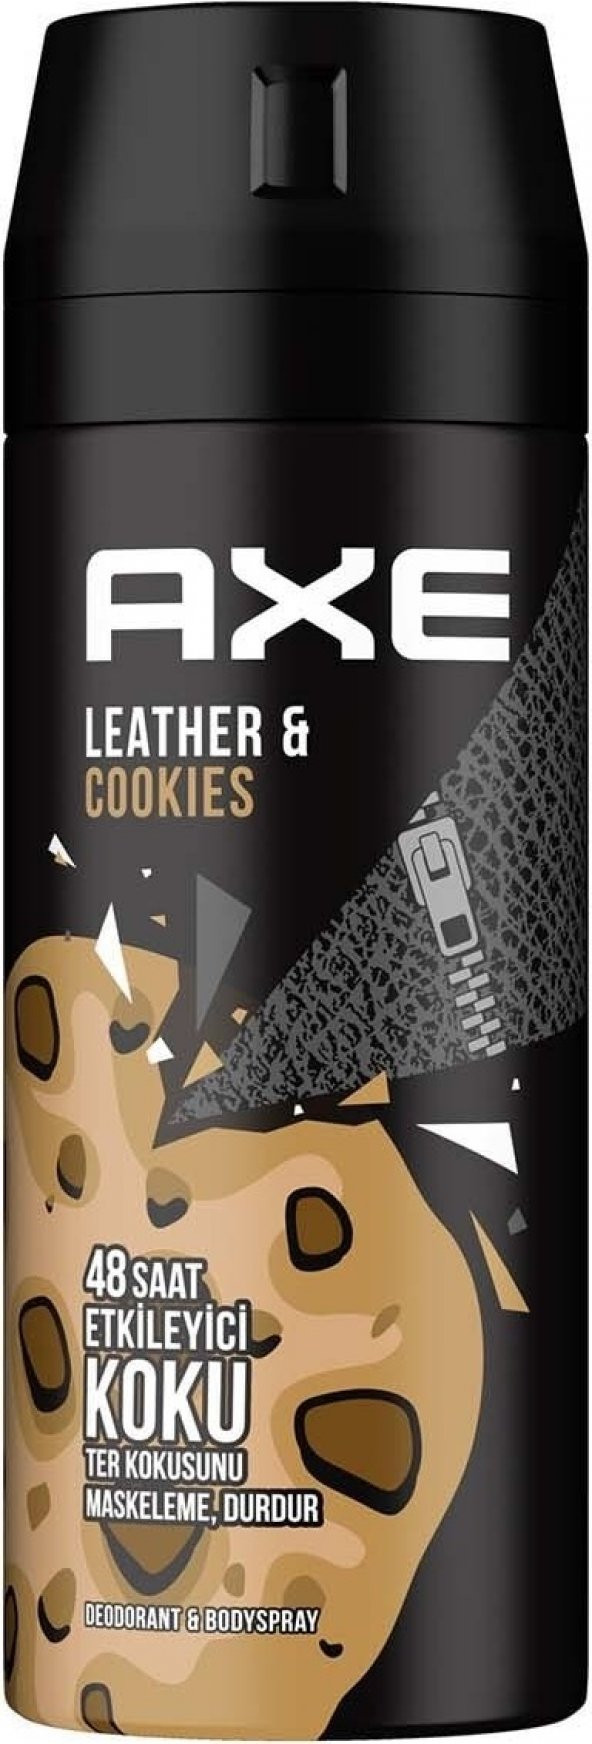 Axe  Erkek Deodorant & Bodyspray  Leather & Cookies 48 Saat Etkileyici Koku 150 ML